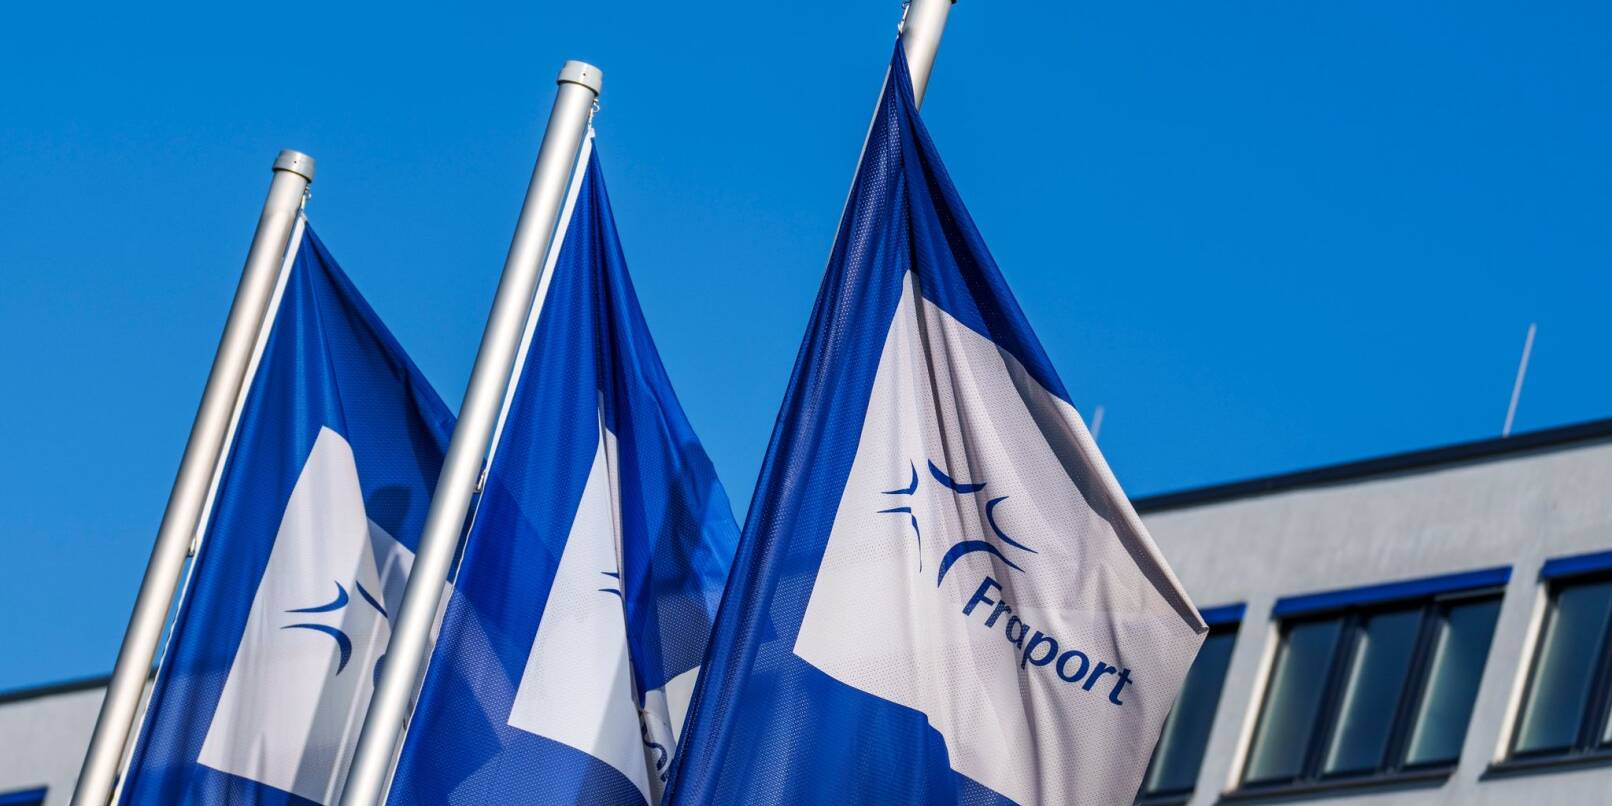 Flaggen mit dem Logo der Fraport AG wehen vor der Firmenzentrale im Wind.